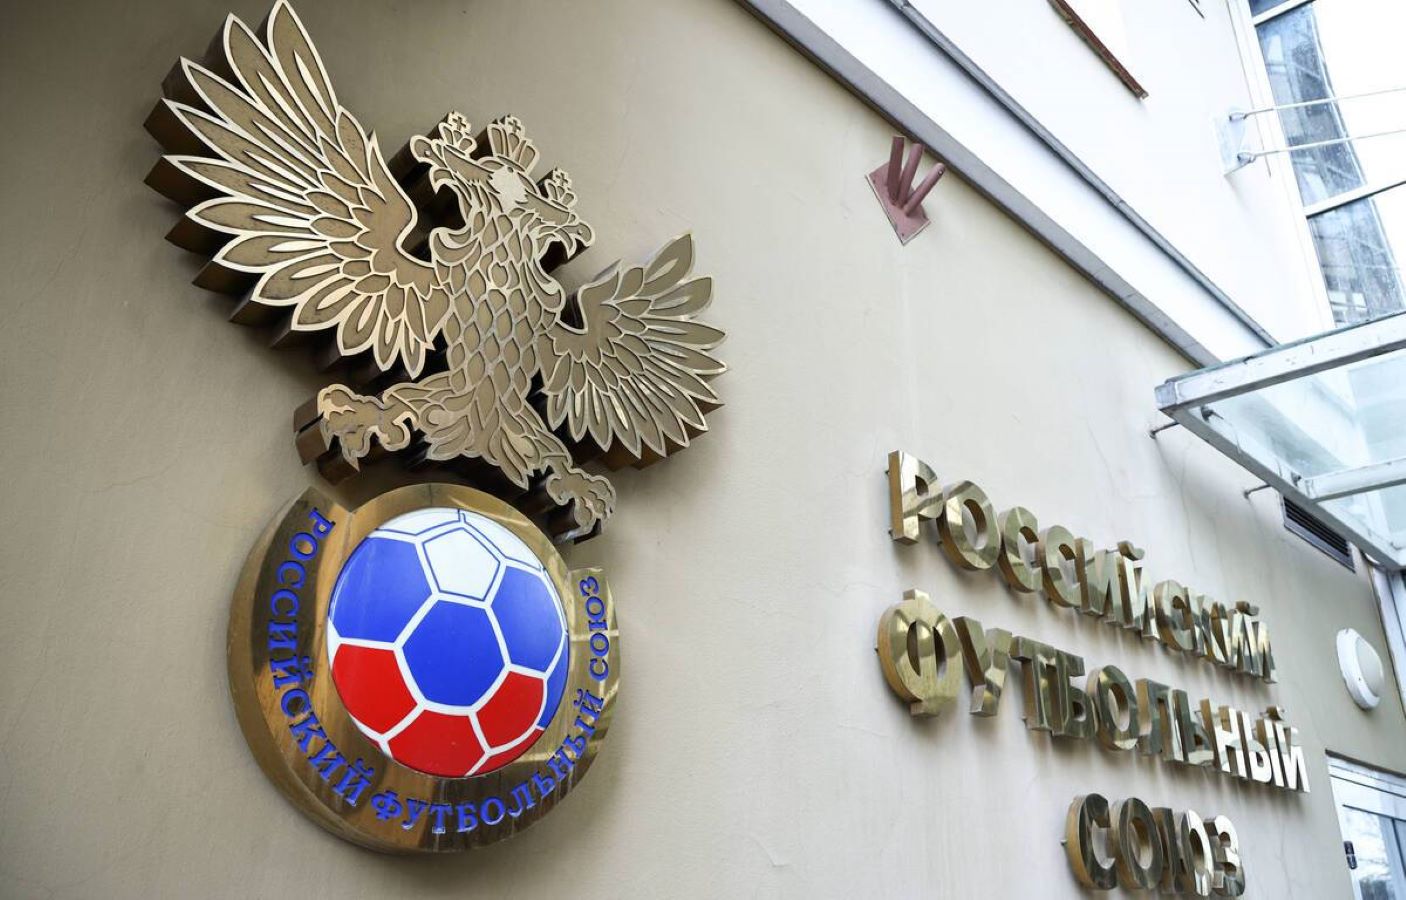 إلغاء مباراة ودية بين روسيا وباراجواي بعد هجوم "كروكوس" الإرهابي